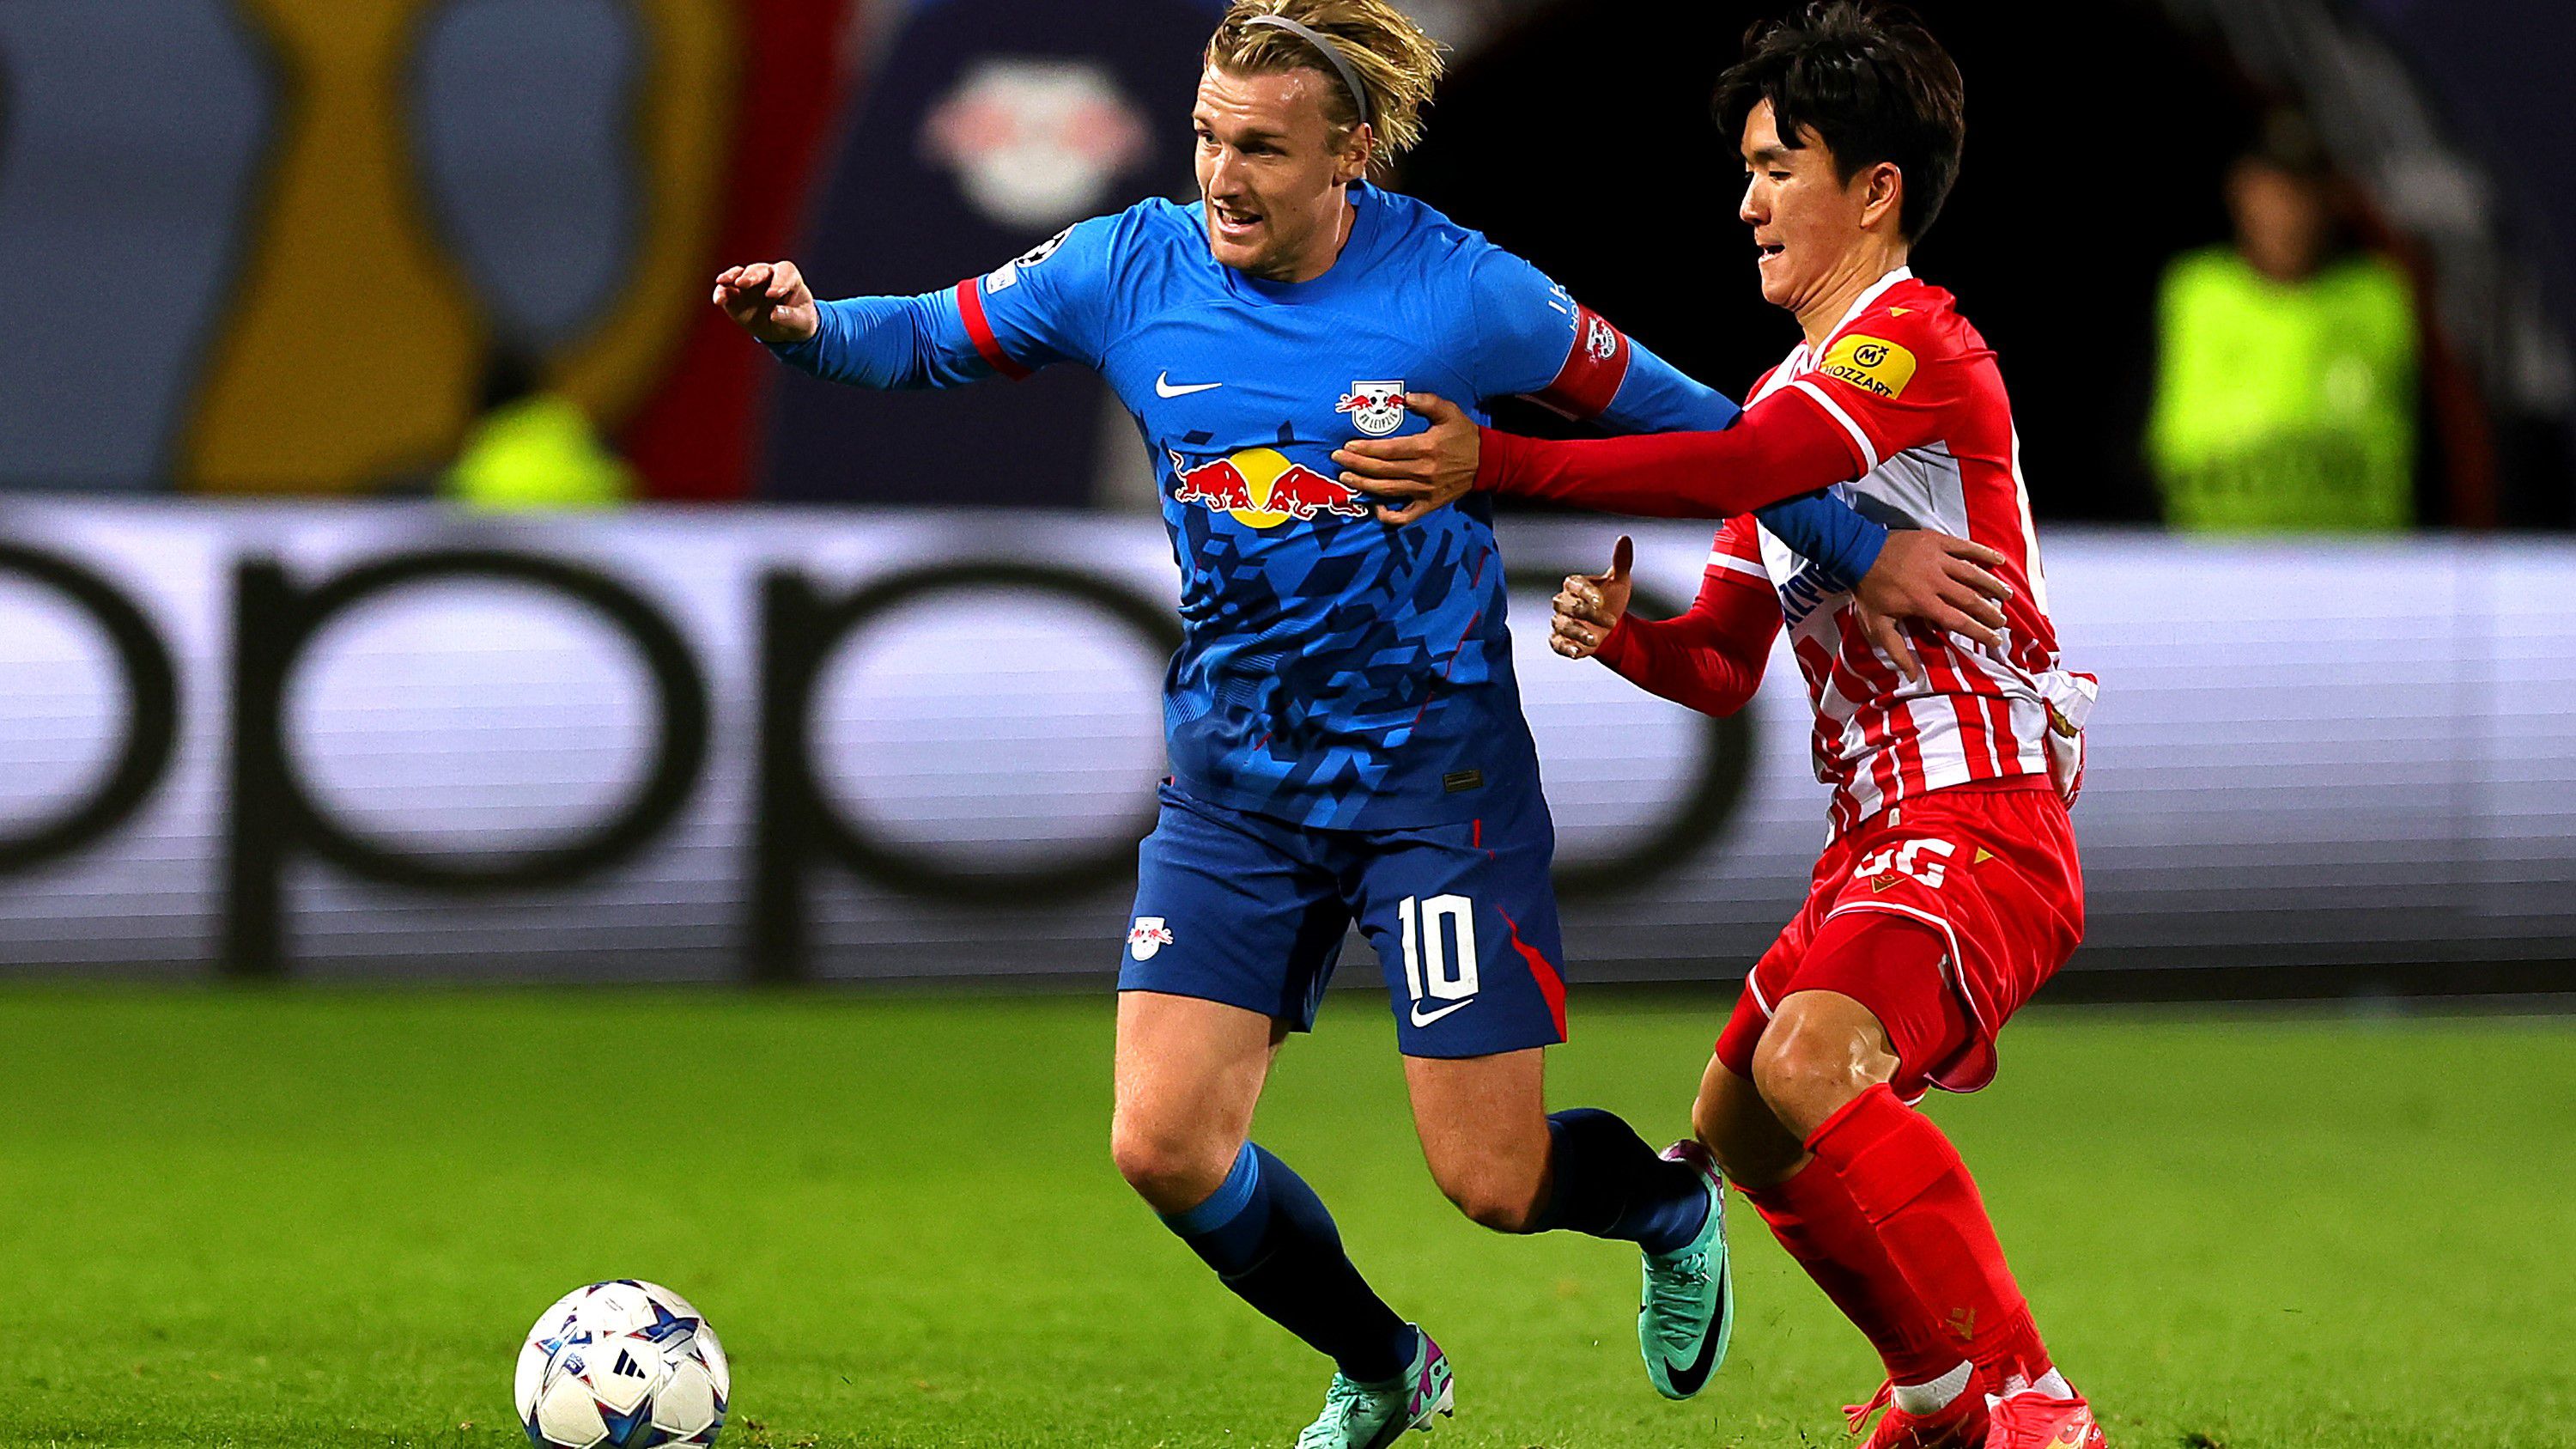 Emil Forsbergék már négy forduló után kiharcolták a továbbjutást a Bajnokok Ligájában